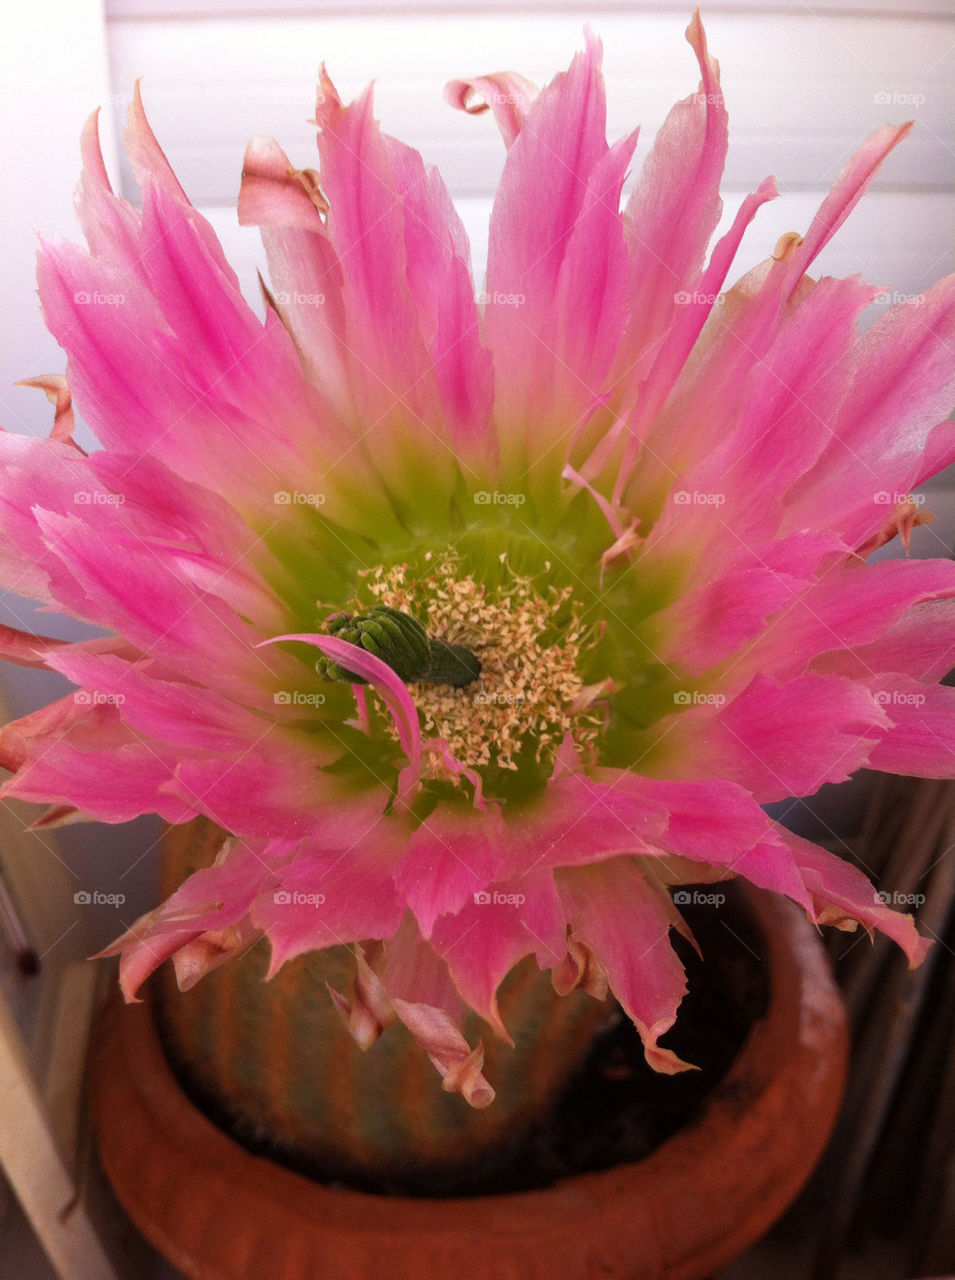 Nice my cactus flower!!